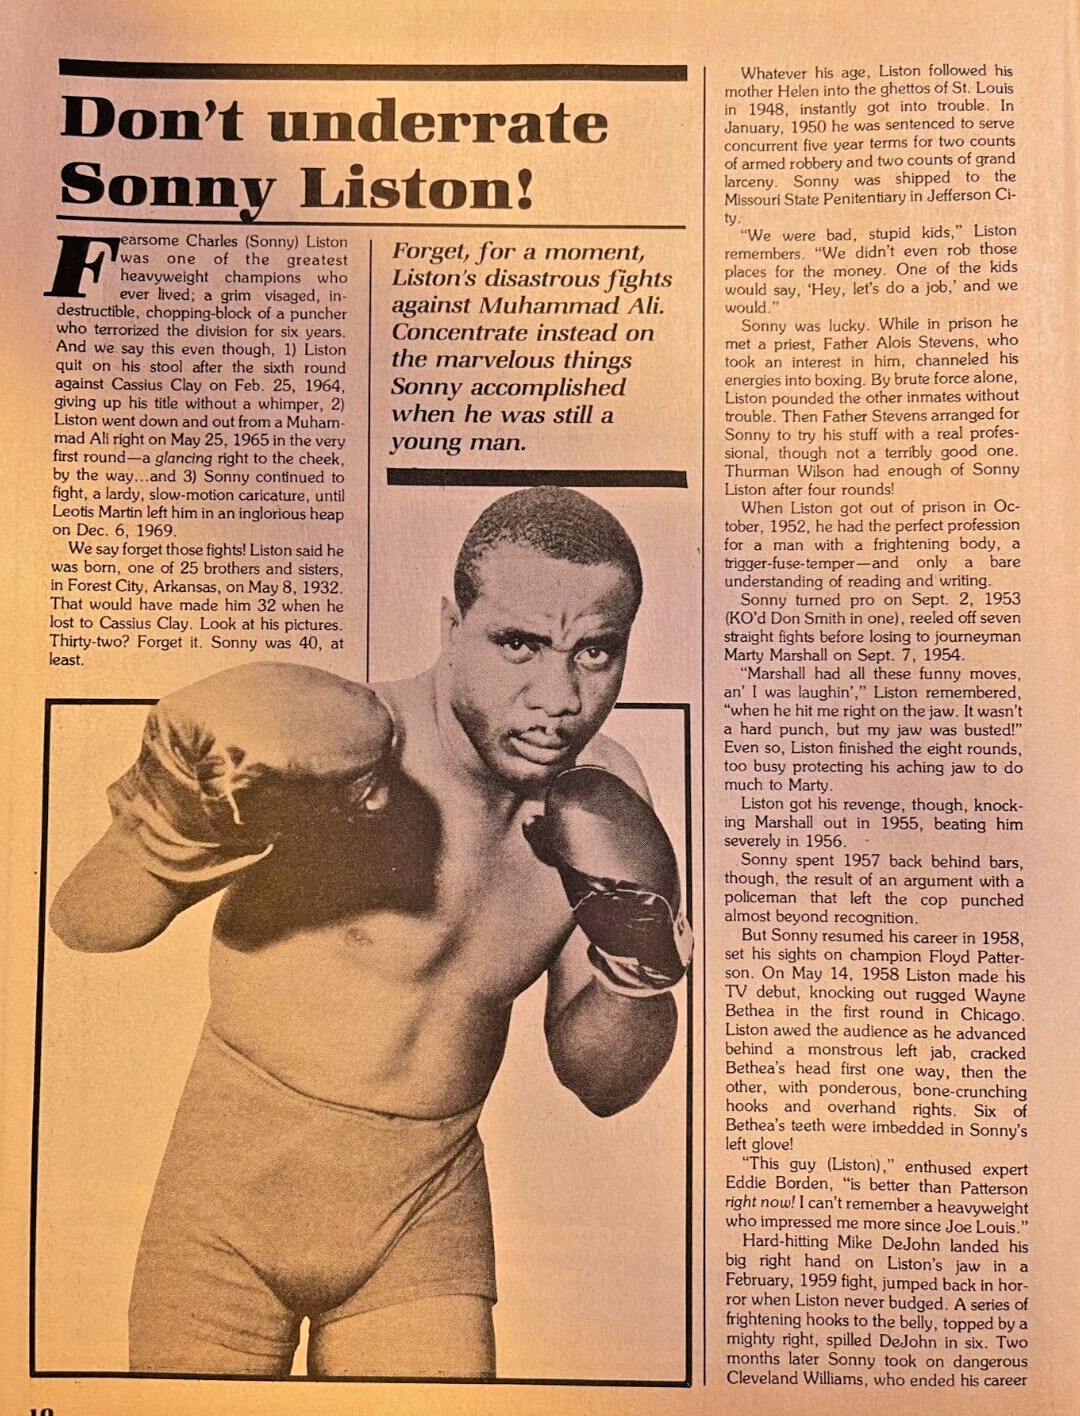 1981 Boxer Sonny Liston